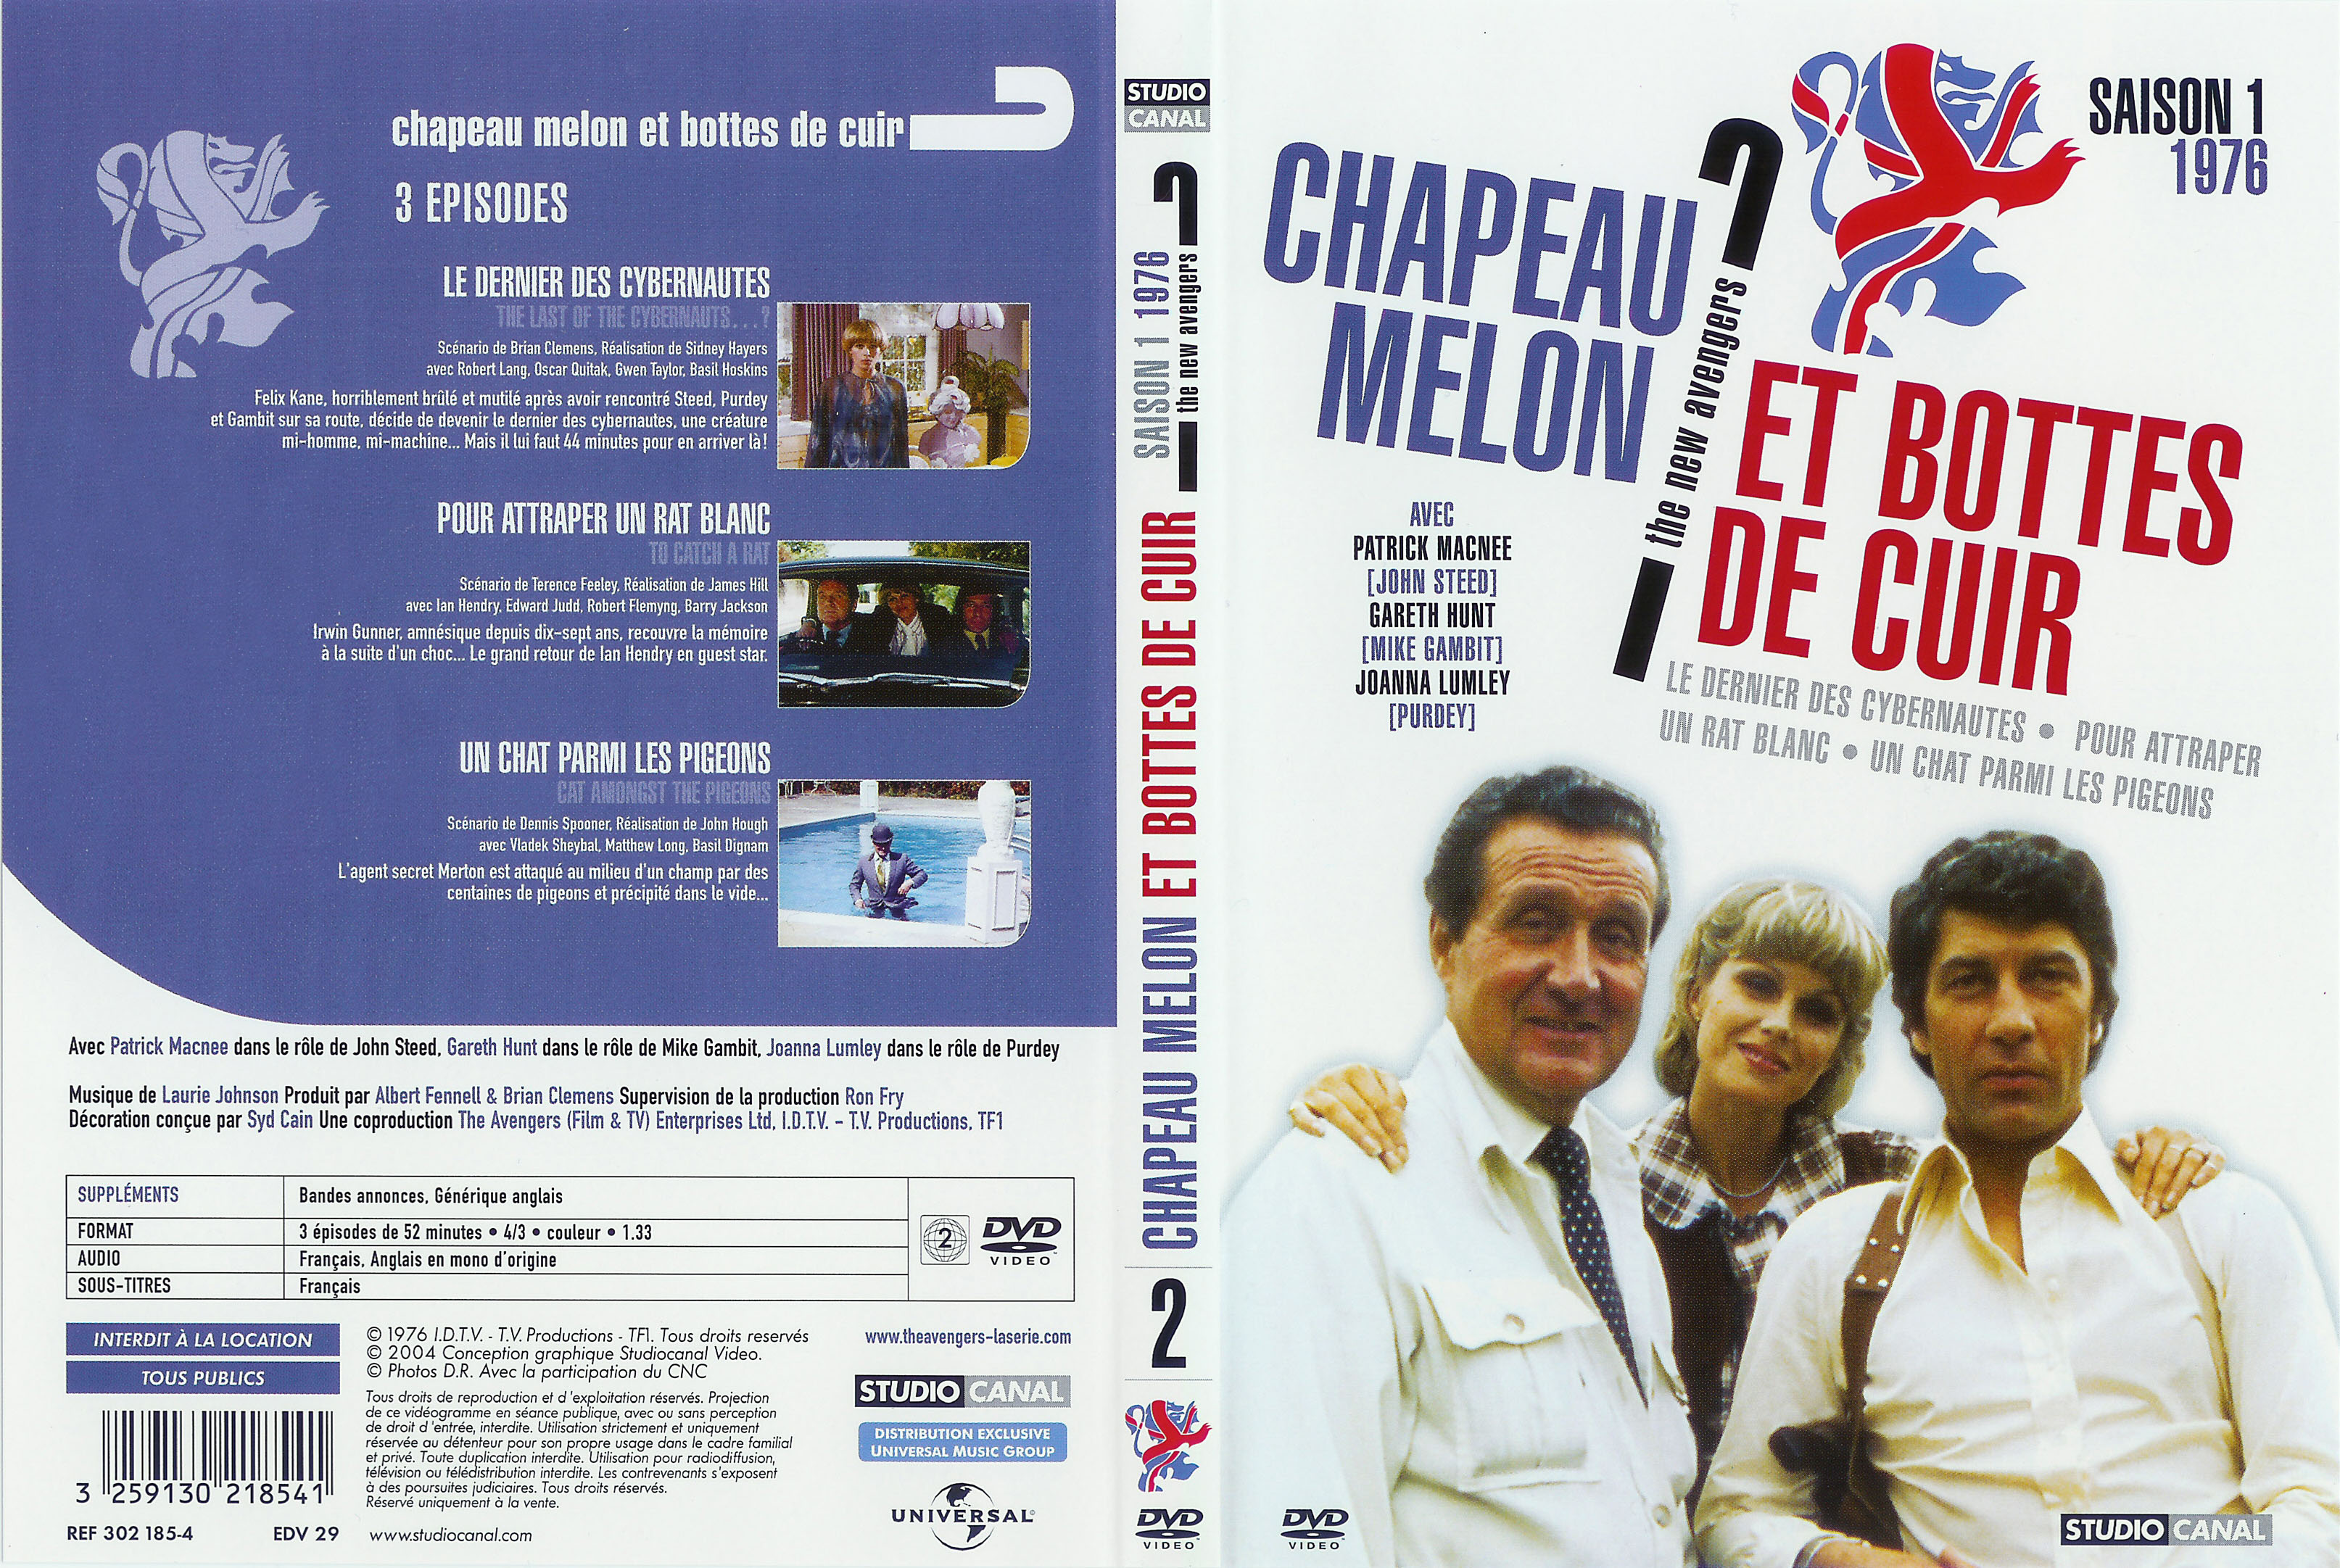 Jaquette DVD Chapeau melon et bottes de cuir 1976 vol 2